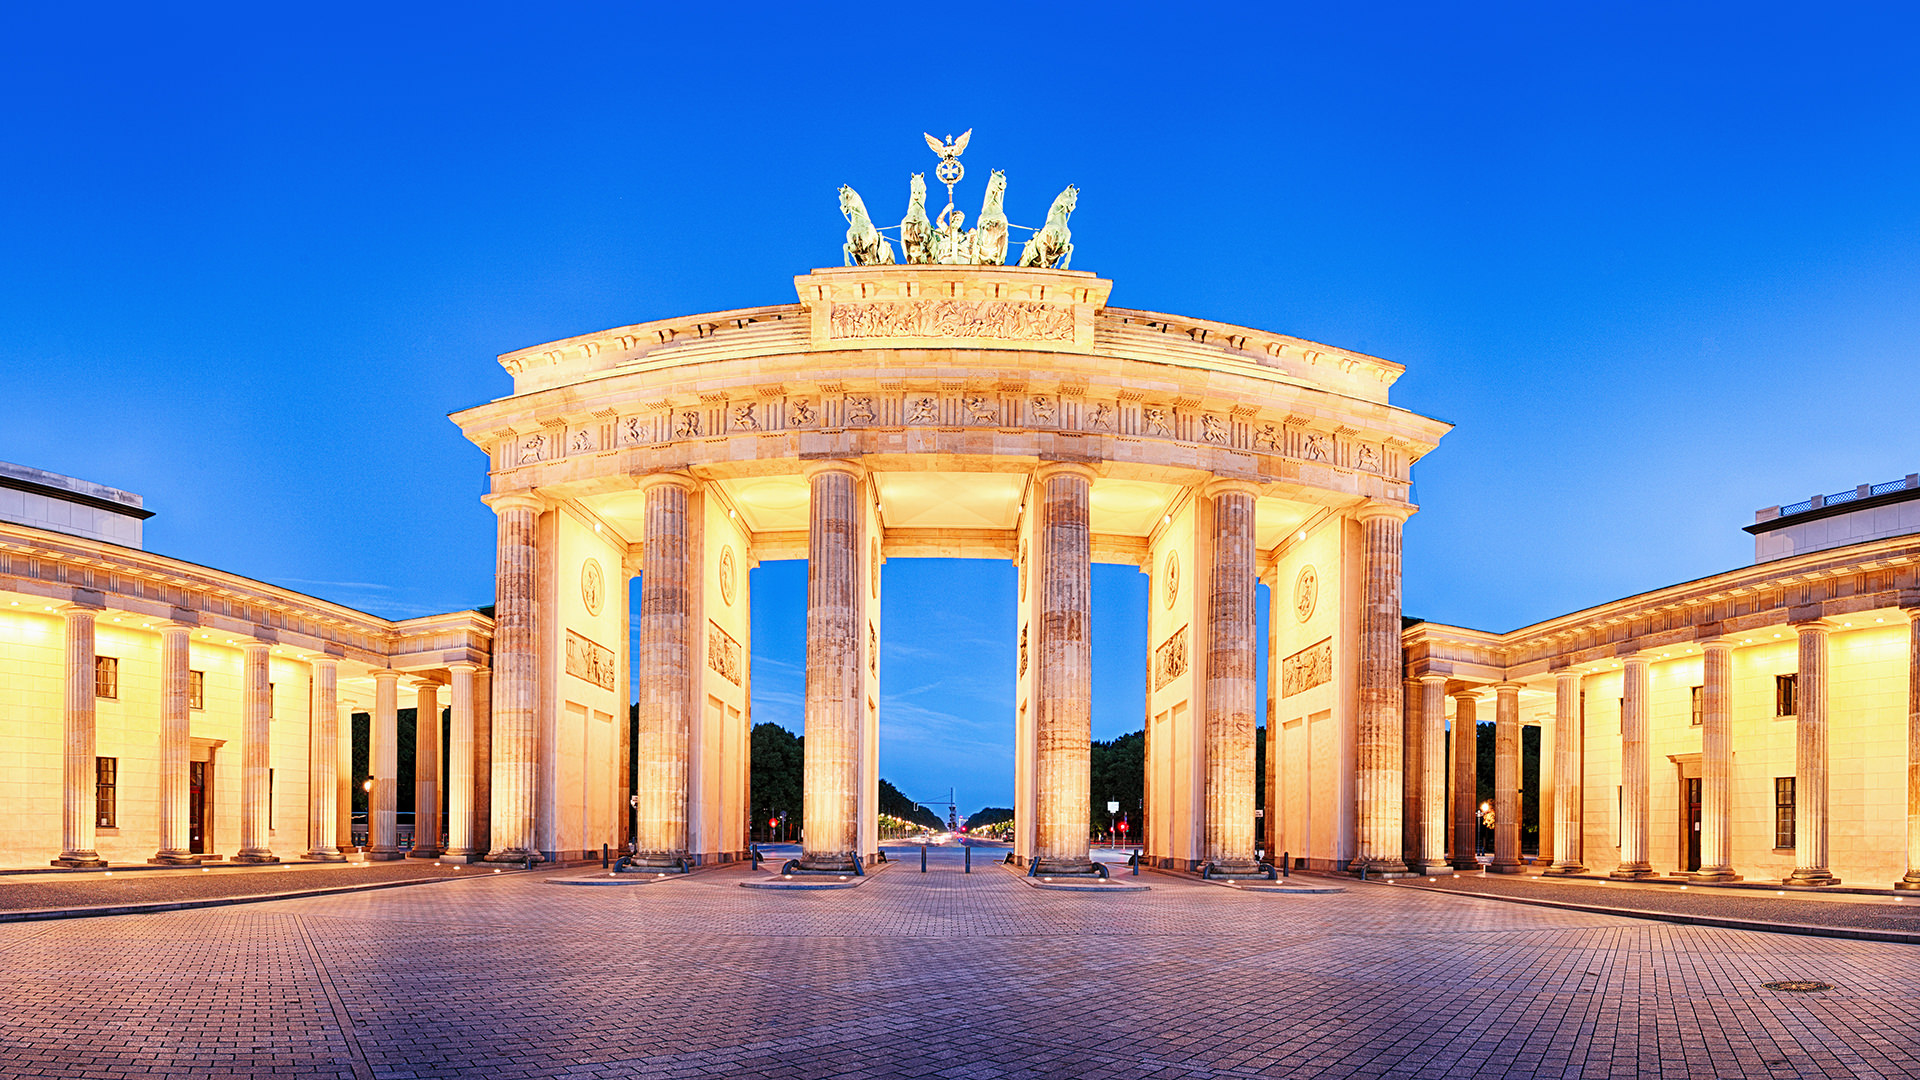 Brandenburg Gate in Germany